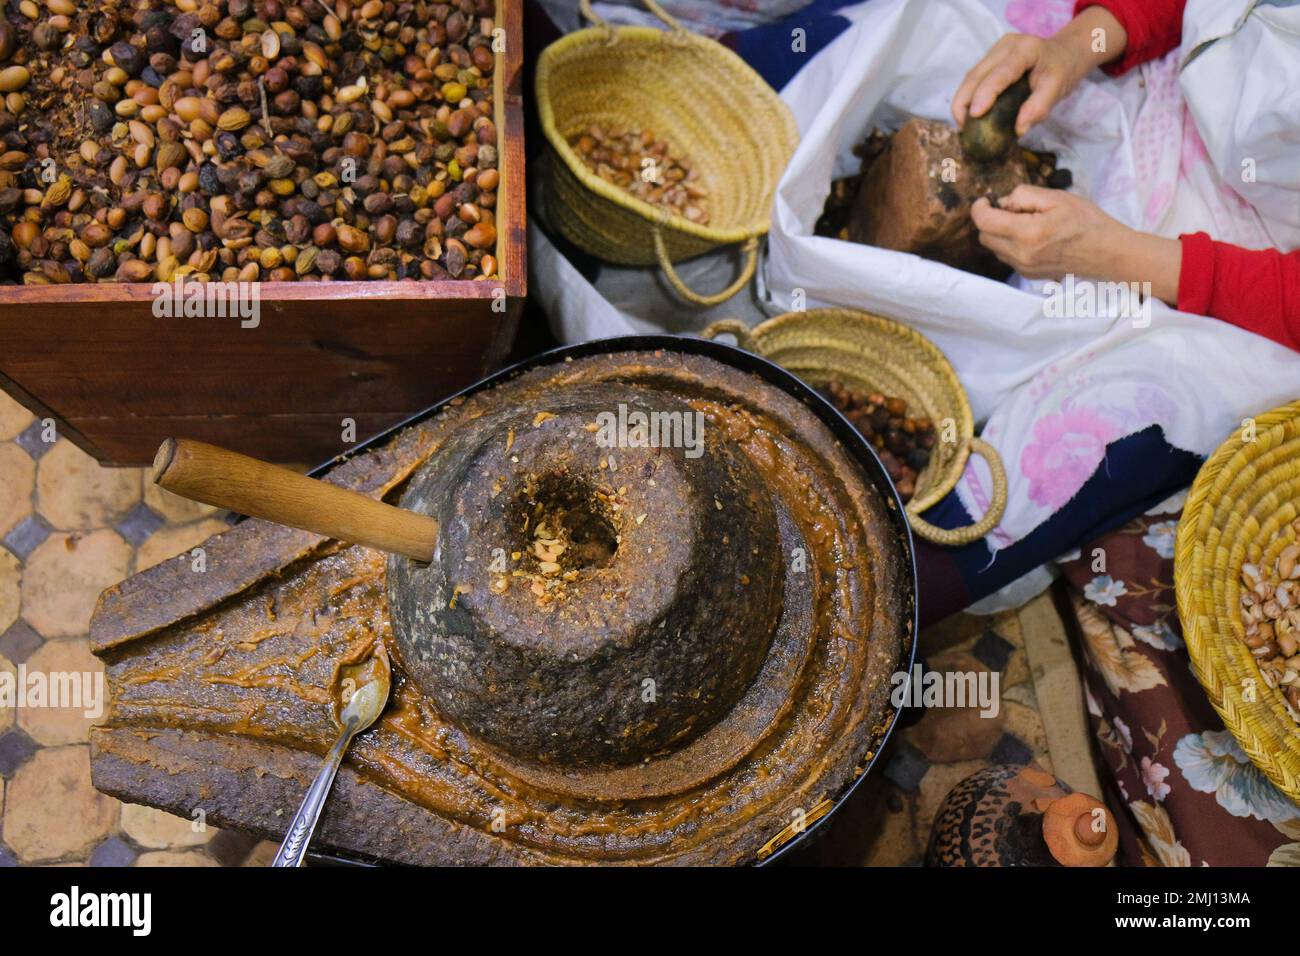 Fez, Marokko - Draufsicht auf die Handmühle aus Arganöl, Kasten mit Samen, weibliche Hände, die auf die Nüsse schlagen. Arbeitsintensive Produktion mit traditionellem Mahlwerk. Stockfoto